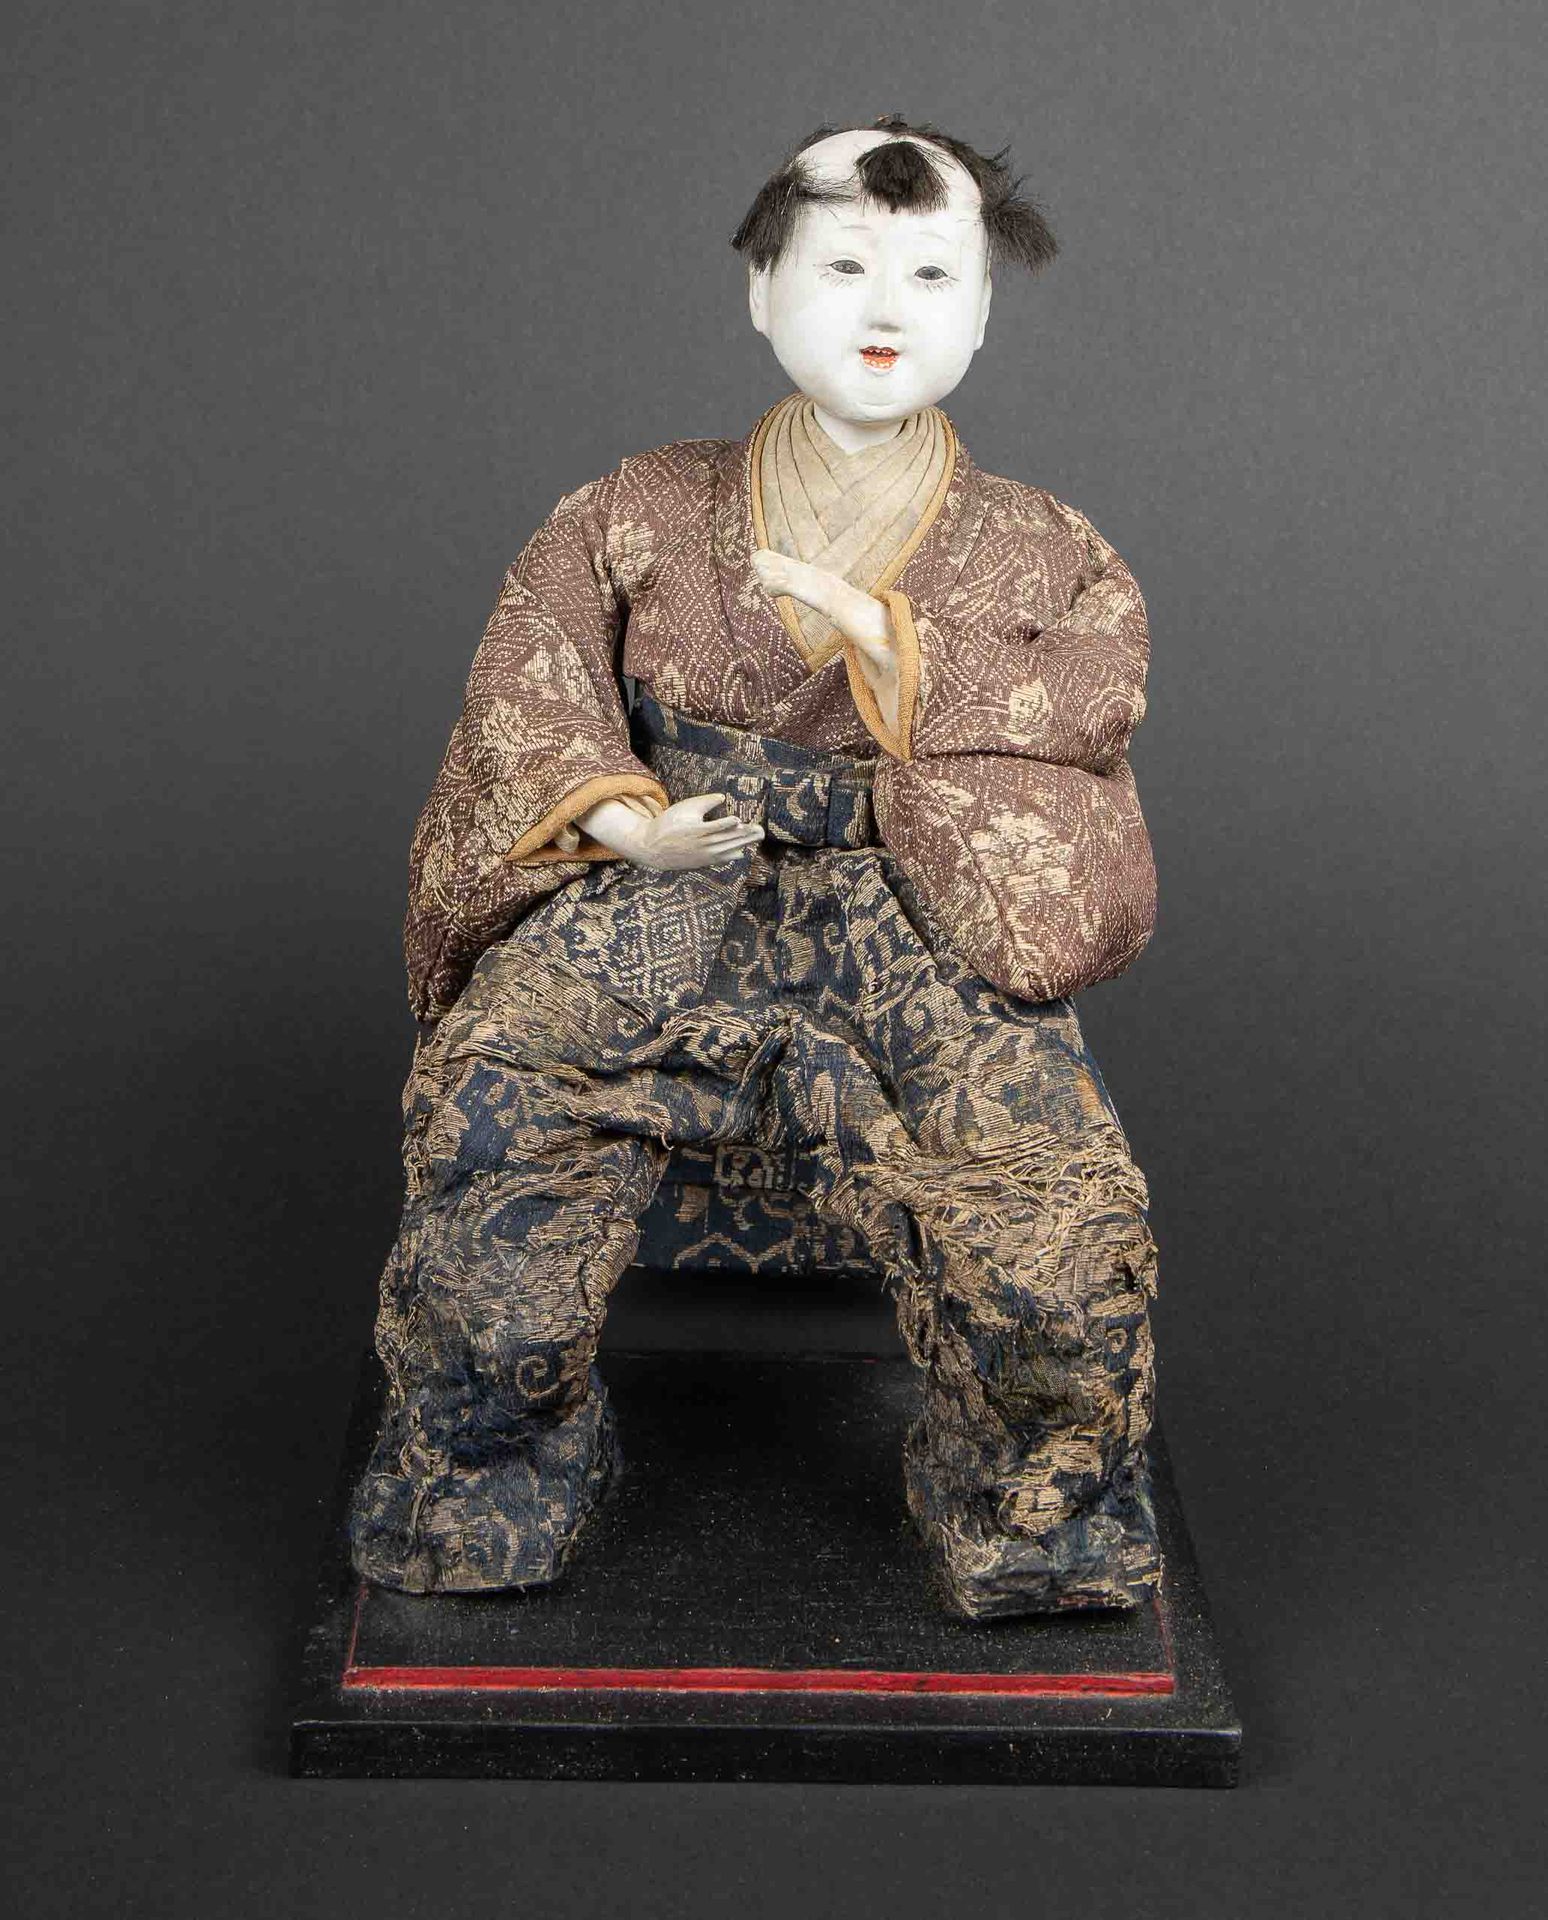 Null 坐着的人物用木头、瓷器、布料和各种材料制成的丰富的衣服。日本，明治。高度：27厘米